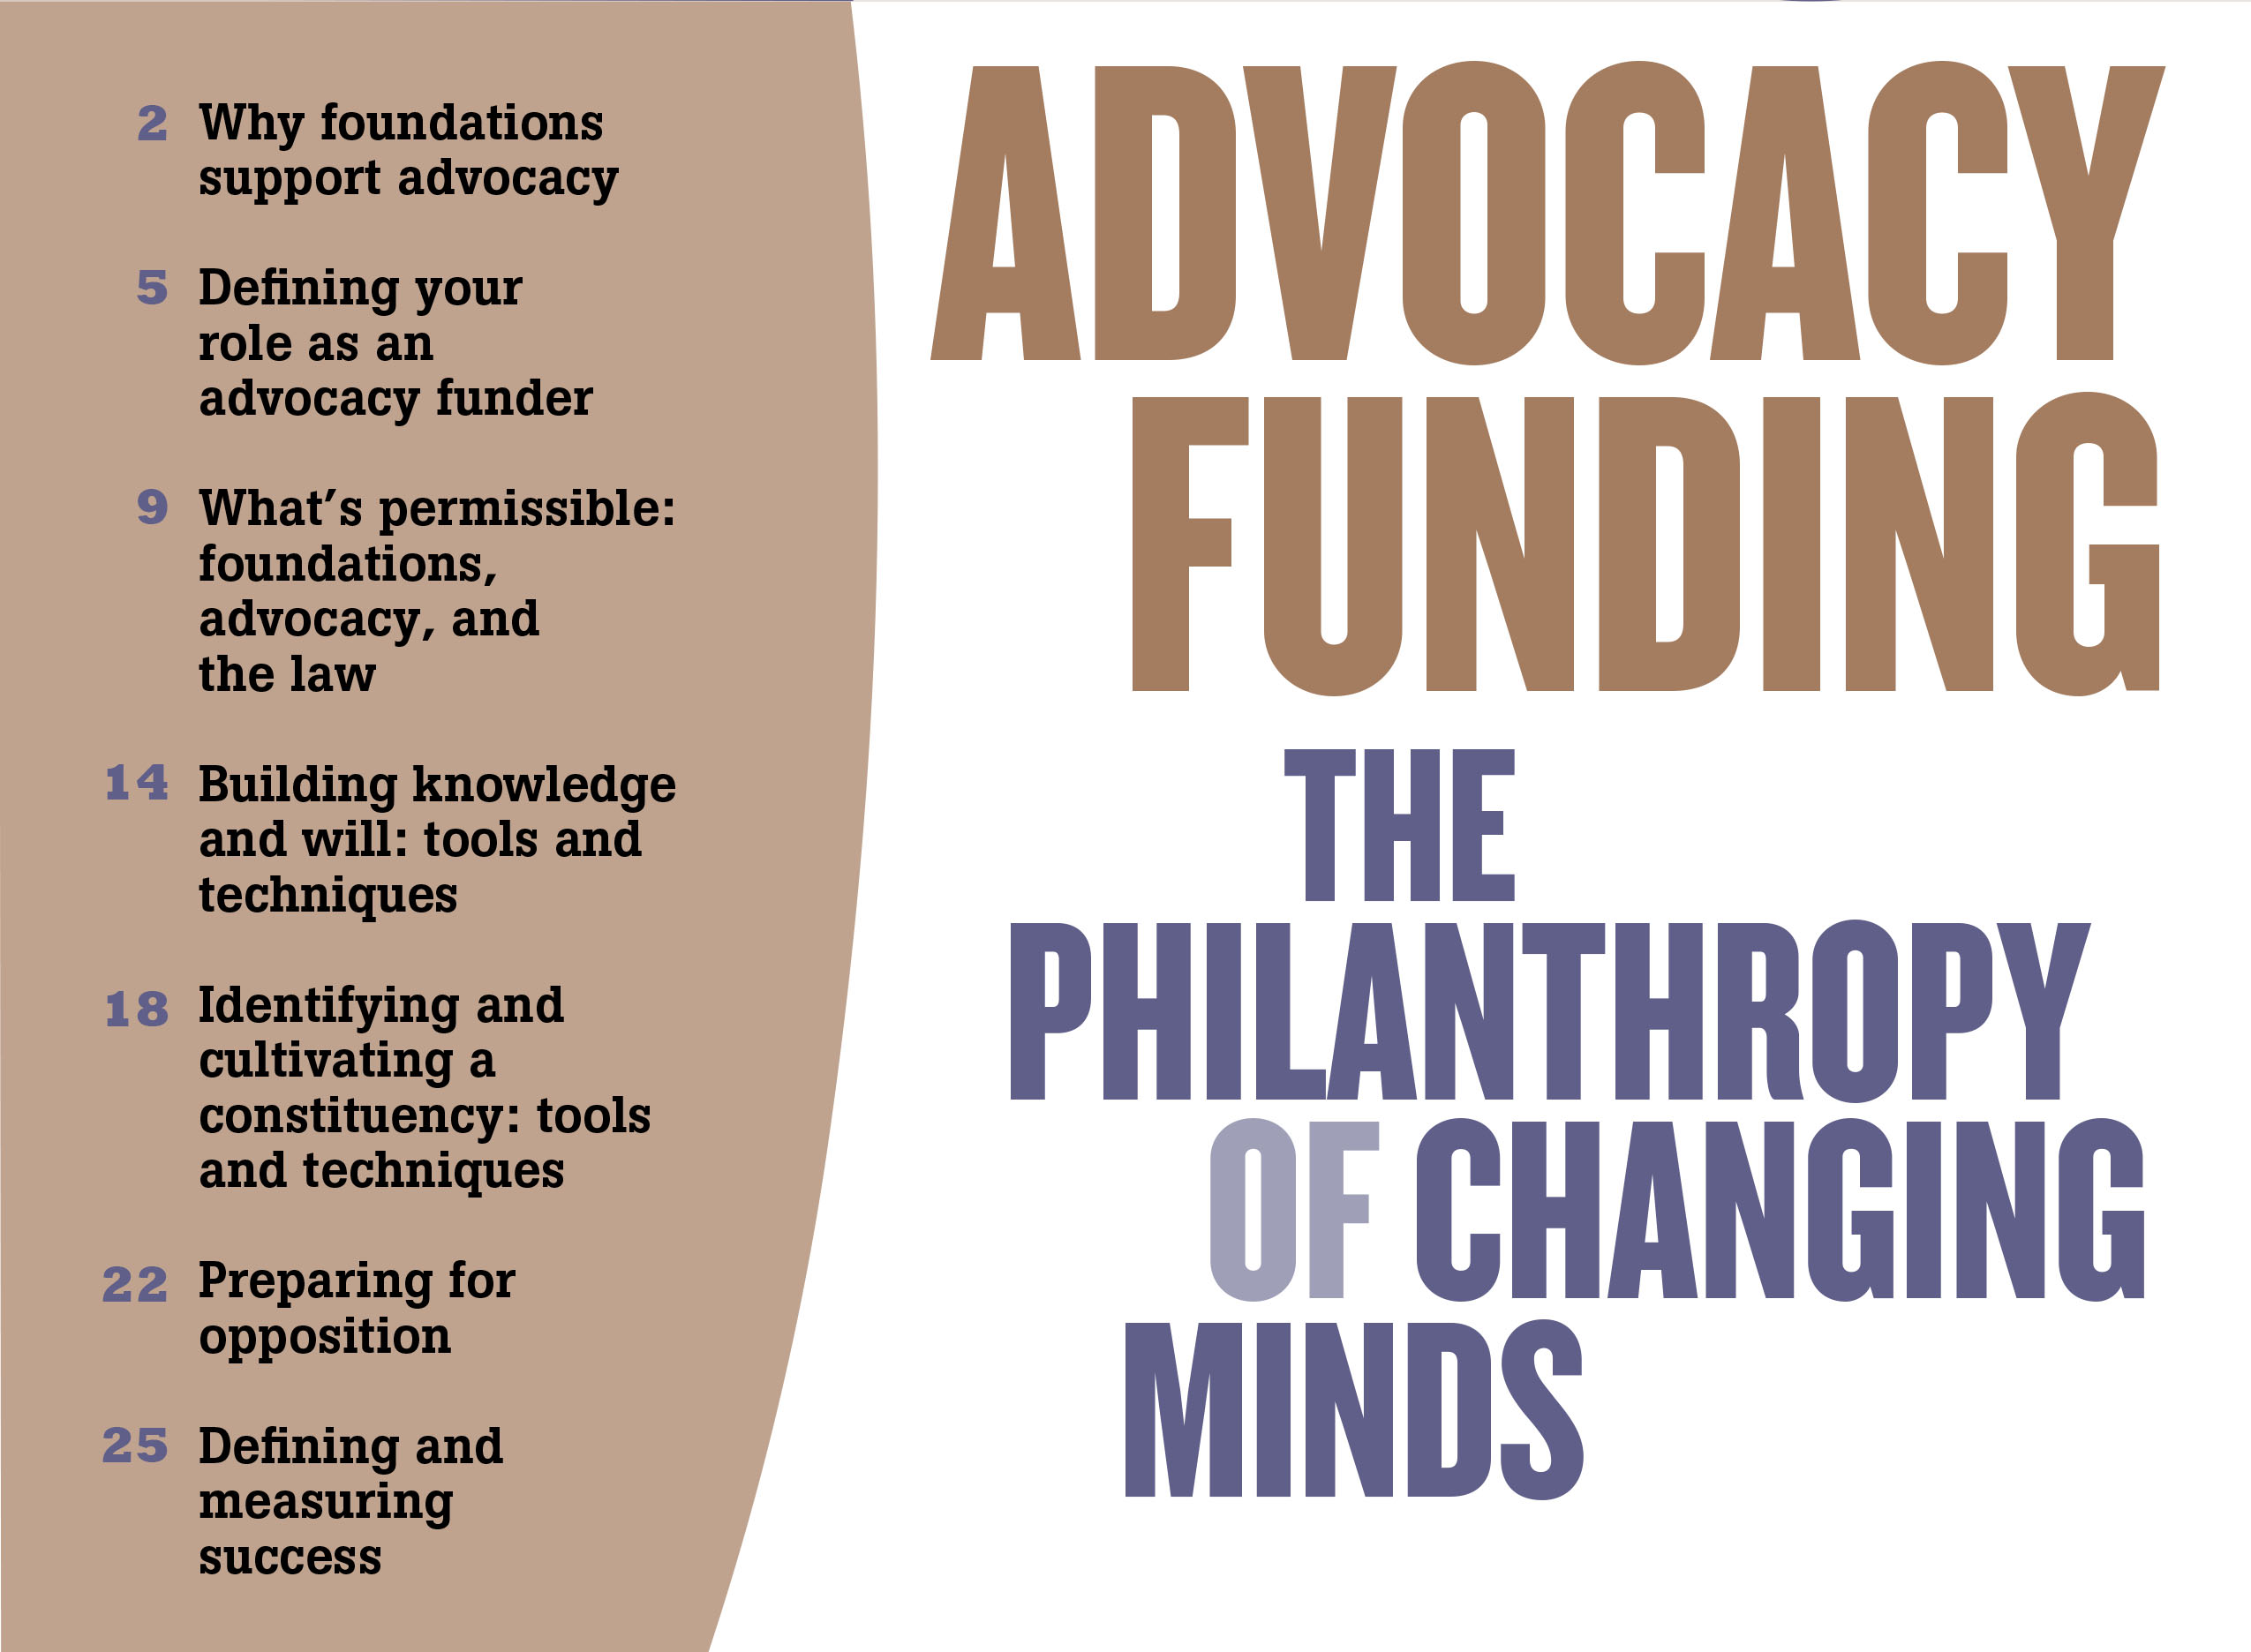 Advocacy Funding